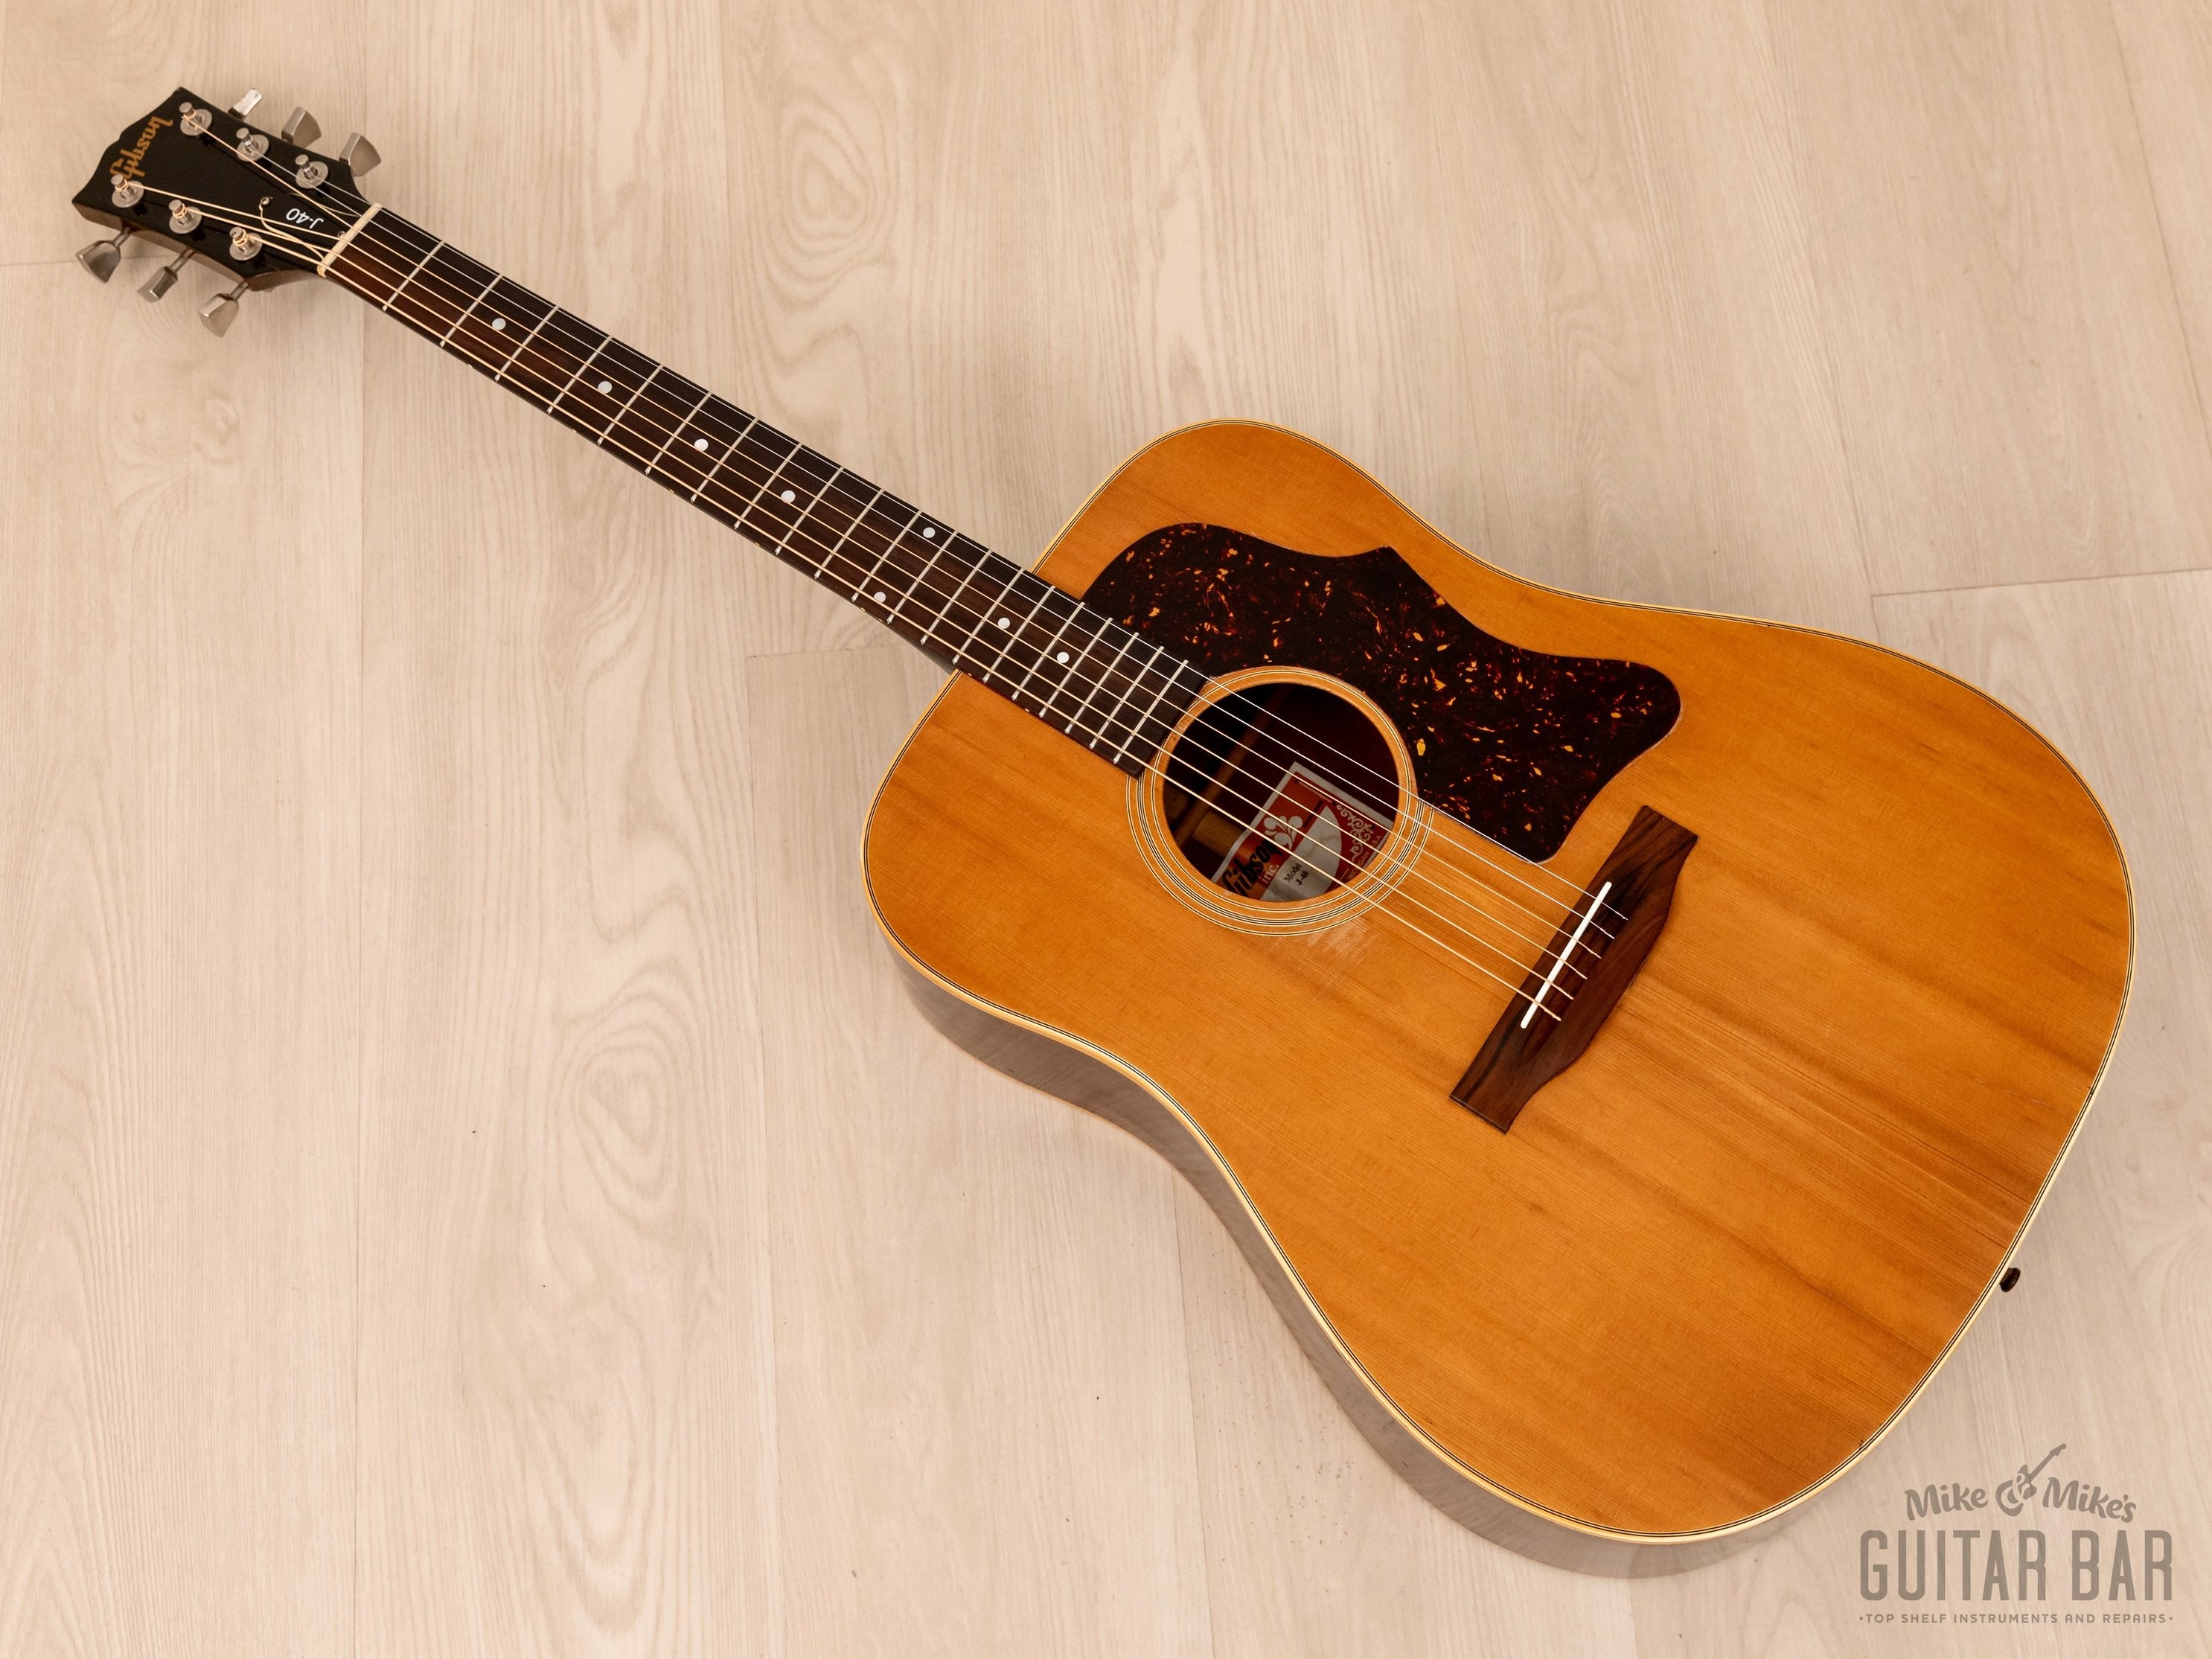 1979 Gibson J-40 Vintage Square Shoulder Dreadnought Acoustic Guitar w/ Case